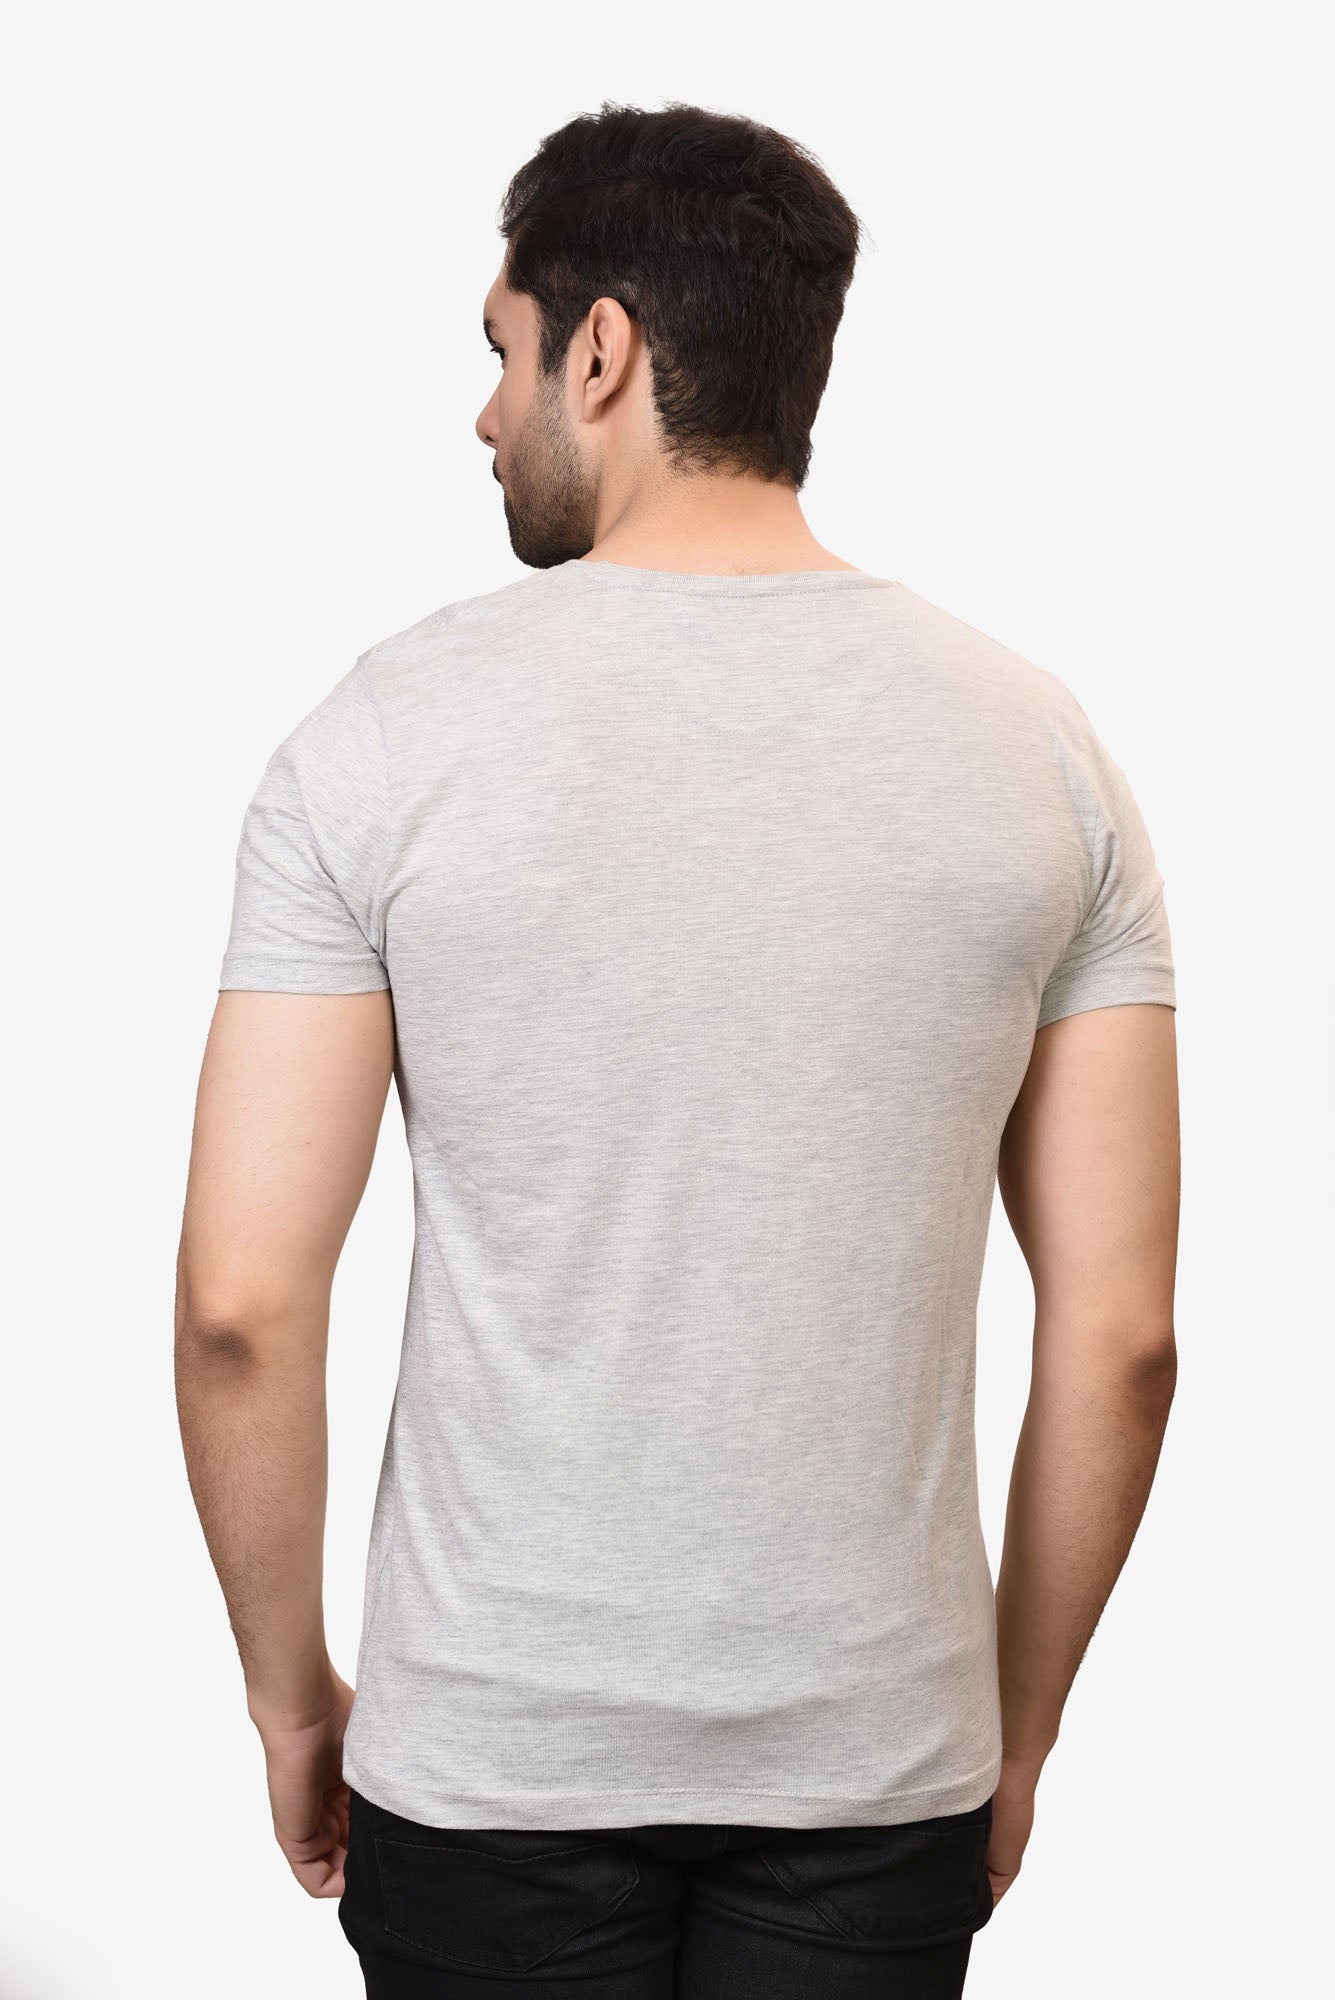 Round Cotton T-Shirt